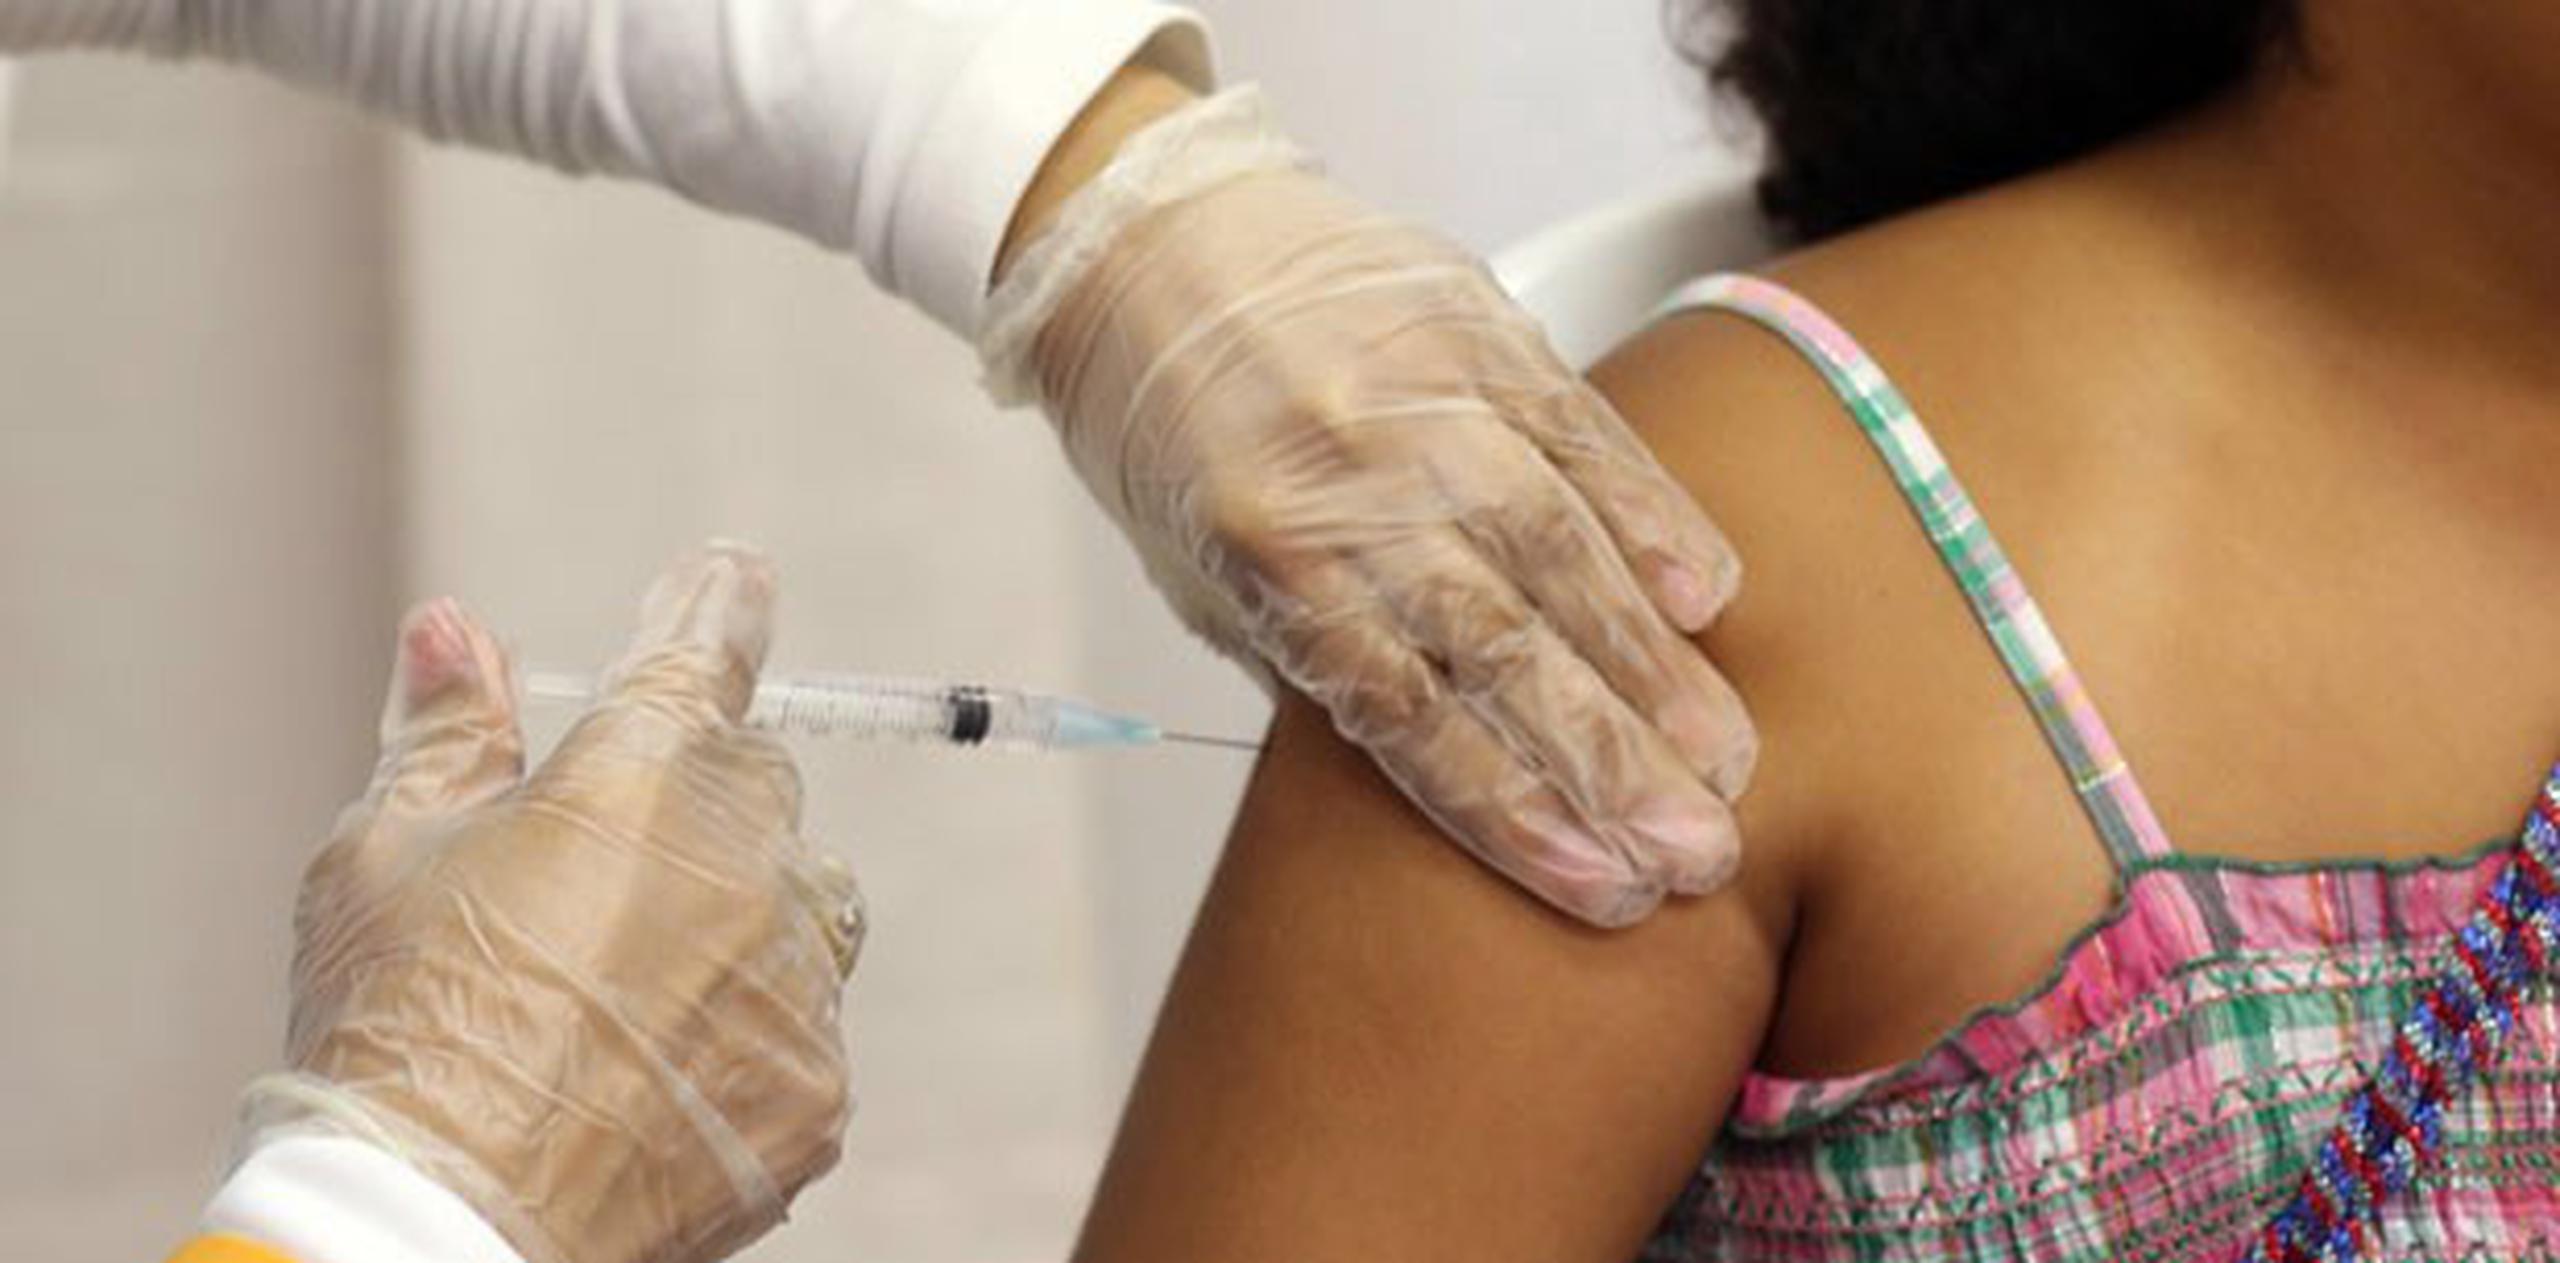 Aunque aún es una lacra en muchos lugares del mundo, el sarampión estaba prácticamente erradicado en Estados Unidos desde 2000 debido a las vacunaciones. (Archivo)